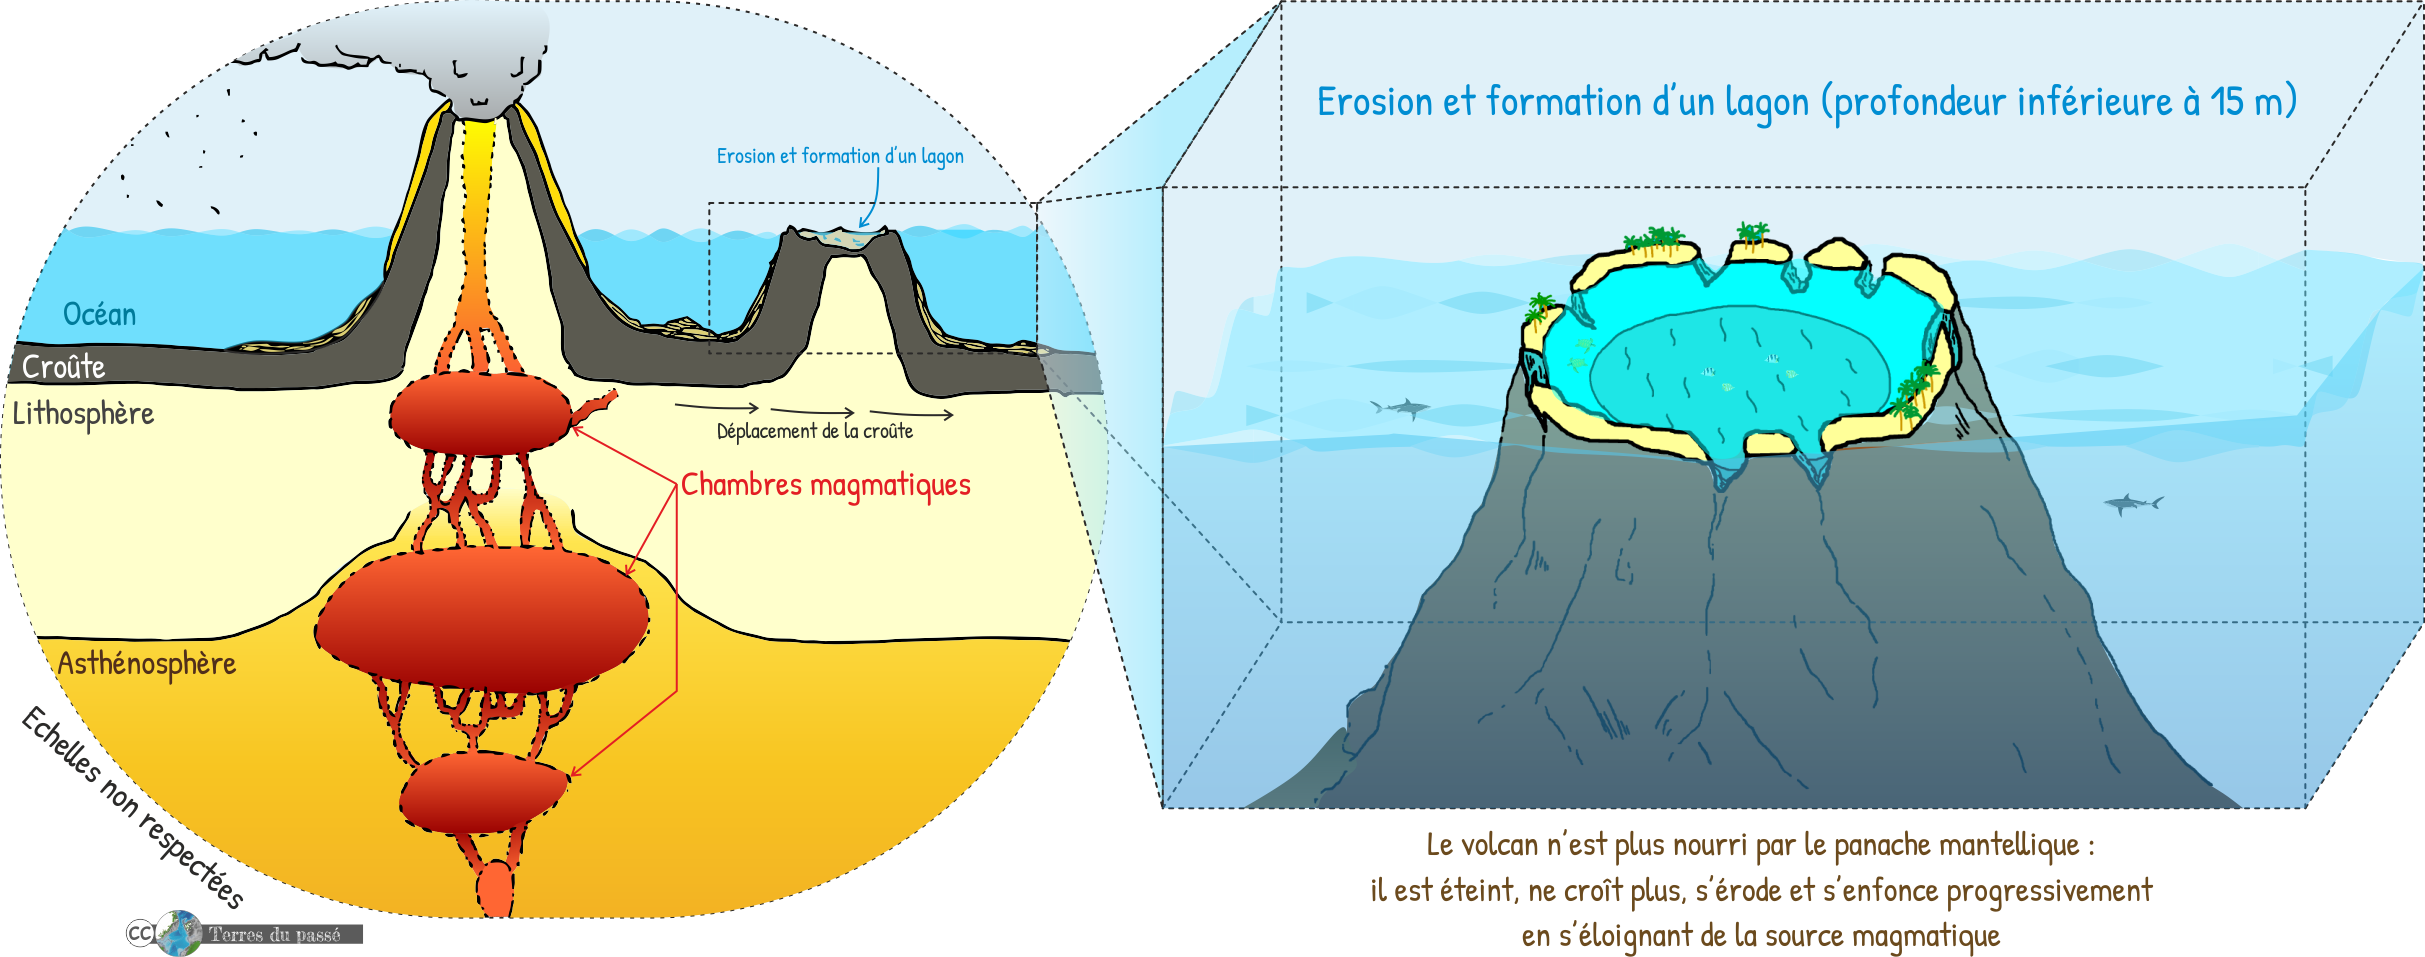 Volcanisme de point chaud, stade 2 : la croûte océanique se décale et le premier volcan formé n'est plus au-dessus du point chaud. Il s'éteint, s'érode et devient un atoll